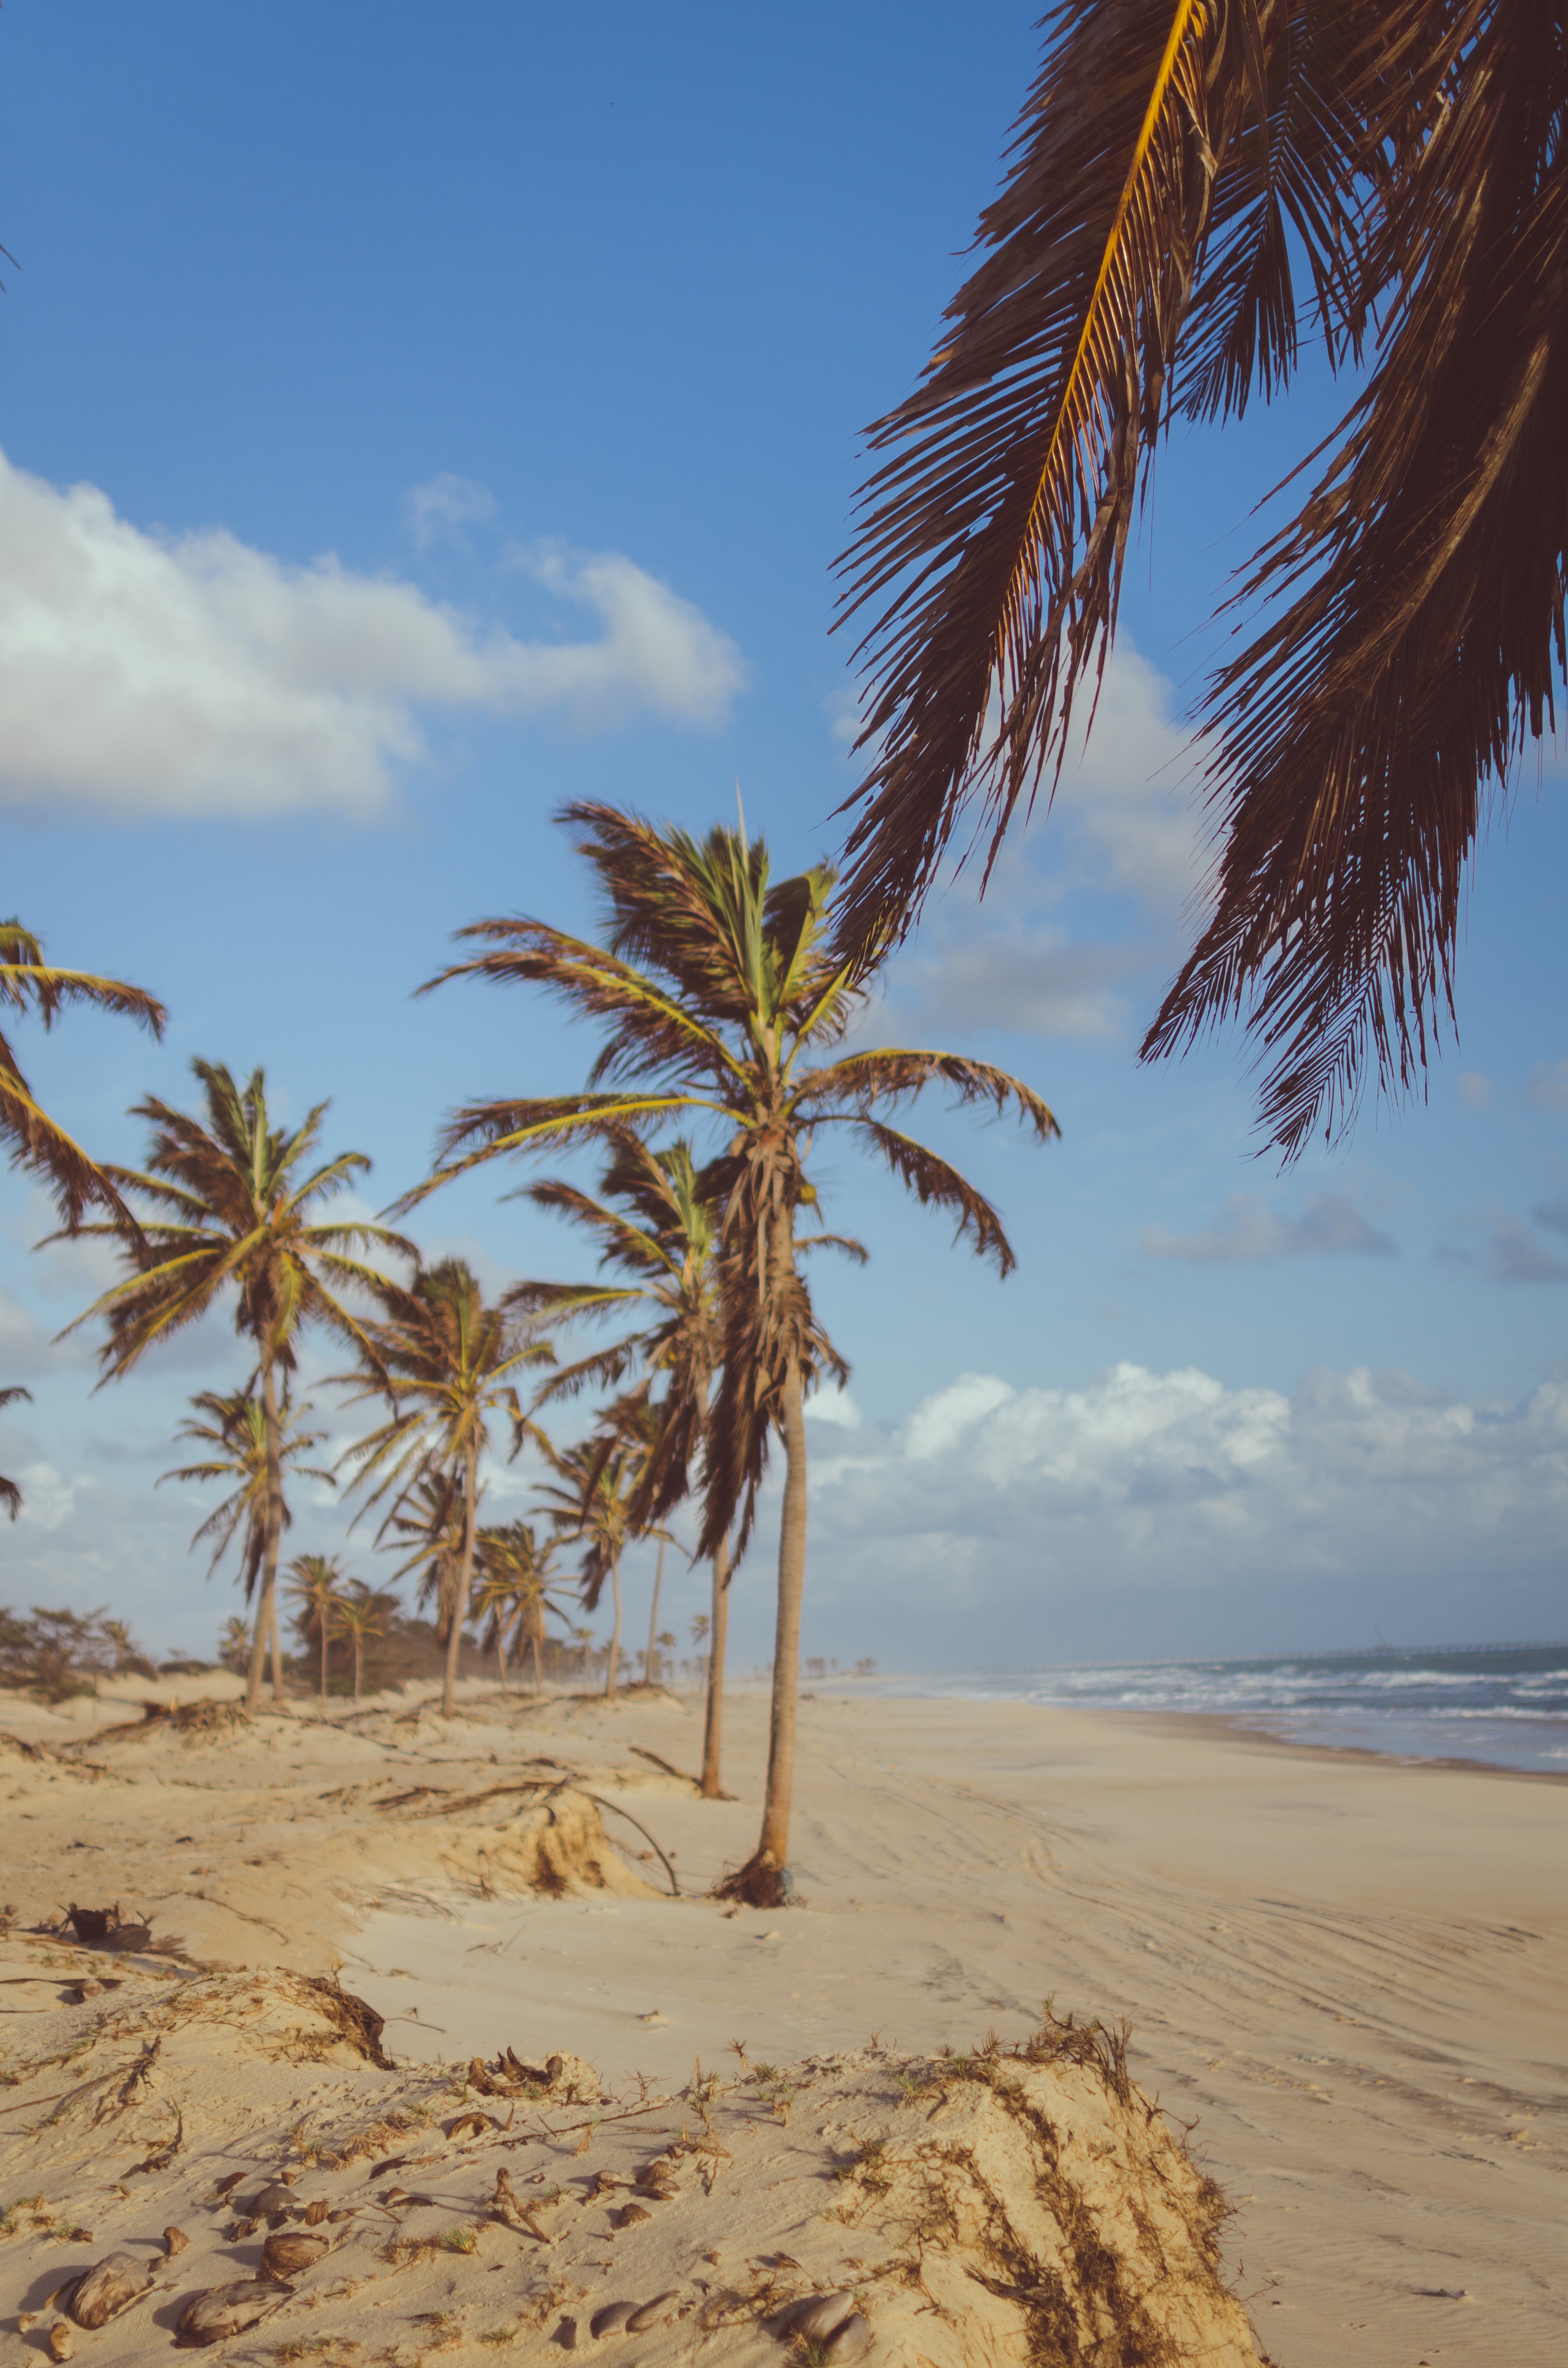 Free photo: Coconut Tree Near Sea at Daytime - Beach, Vacation ...